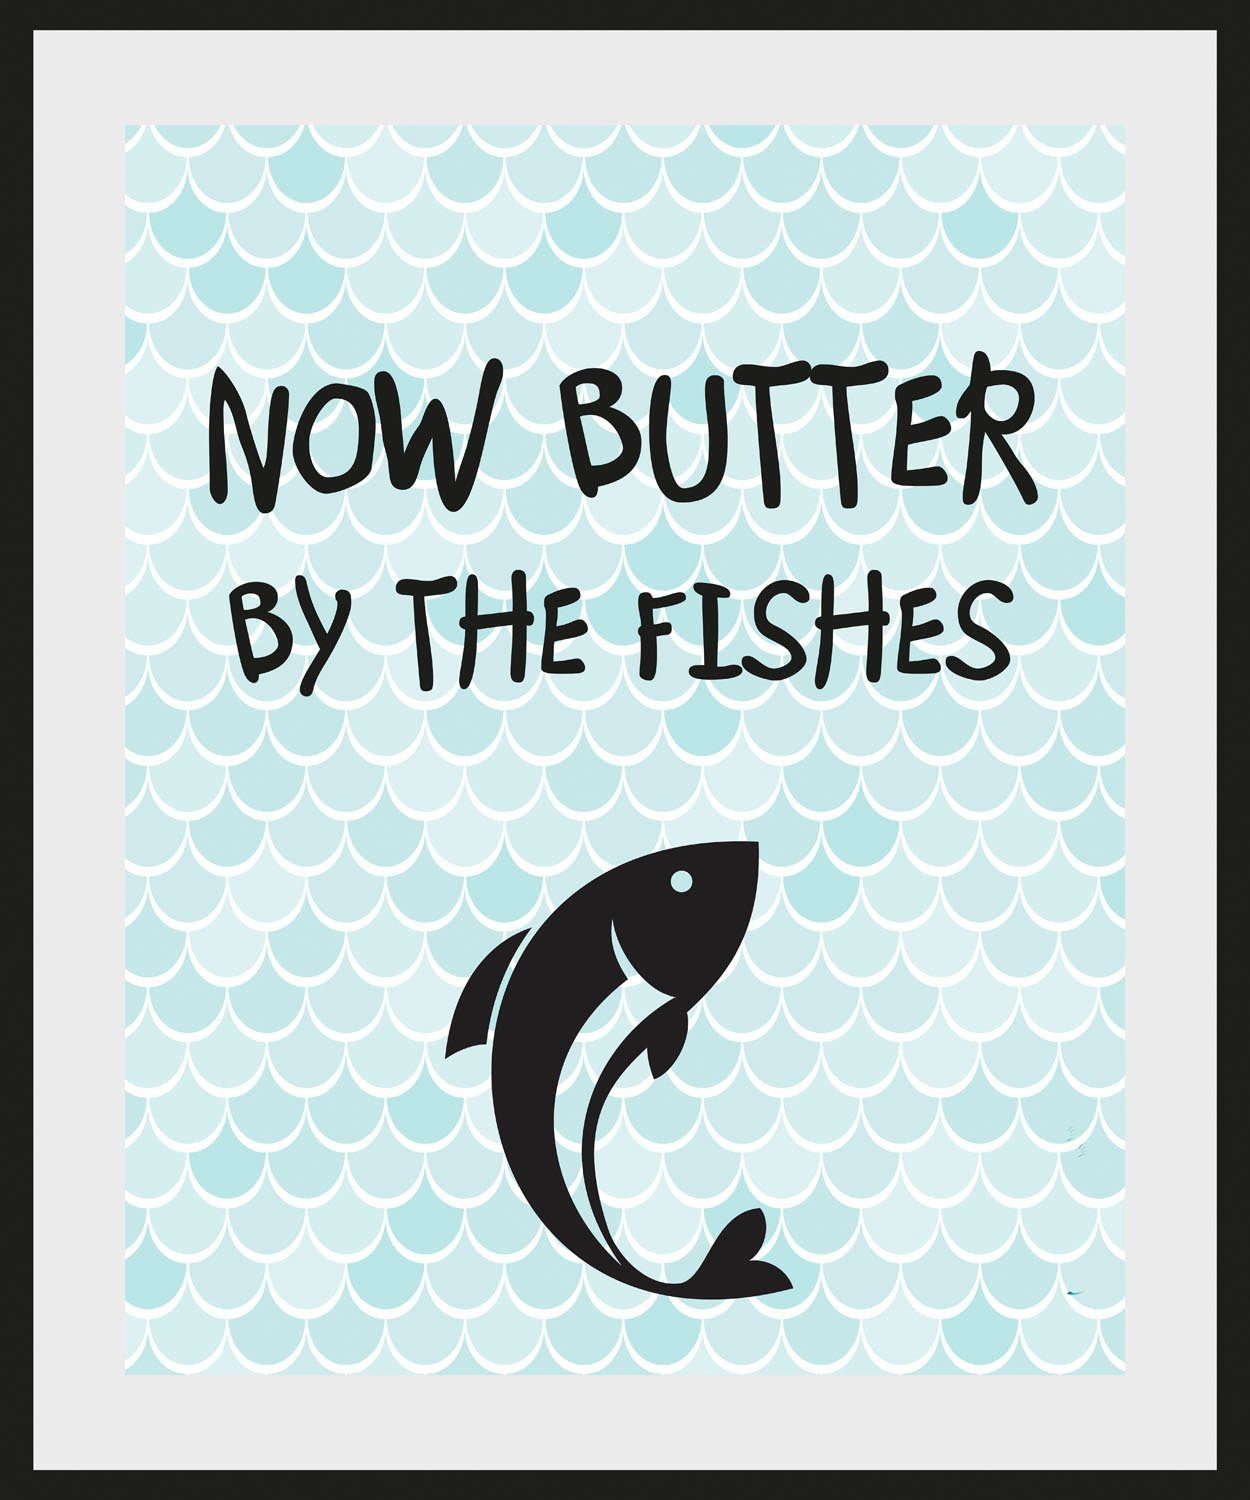 FISHES, Bild BUTTER THE BY queence blau/schwarz St) Schriftzug NOW (1